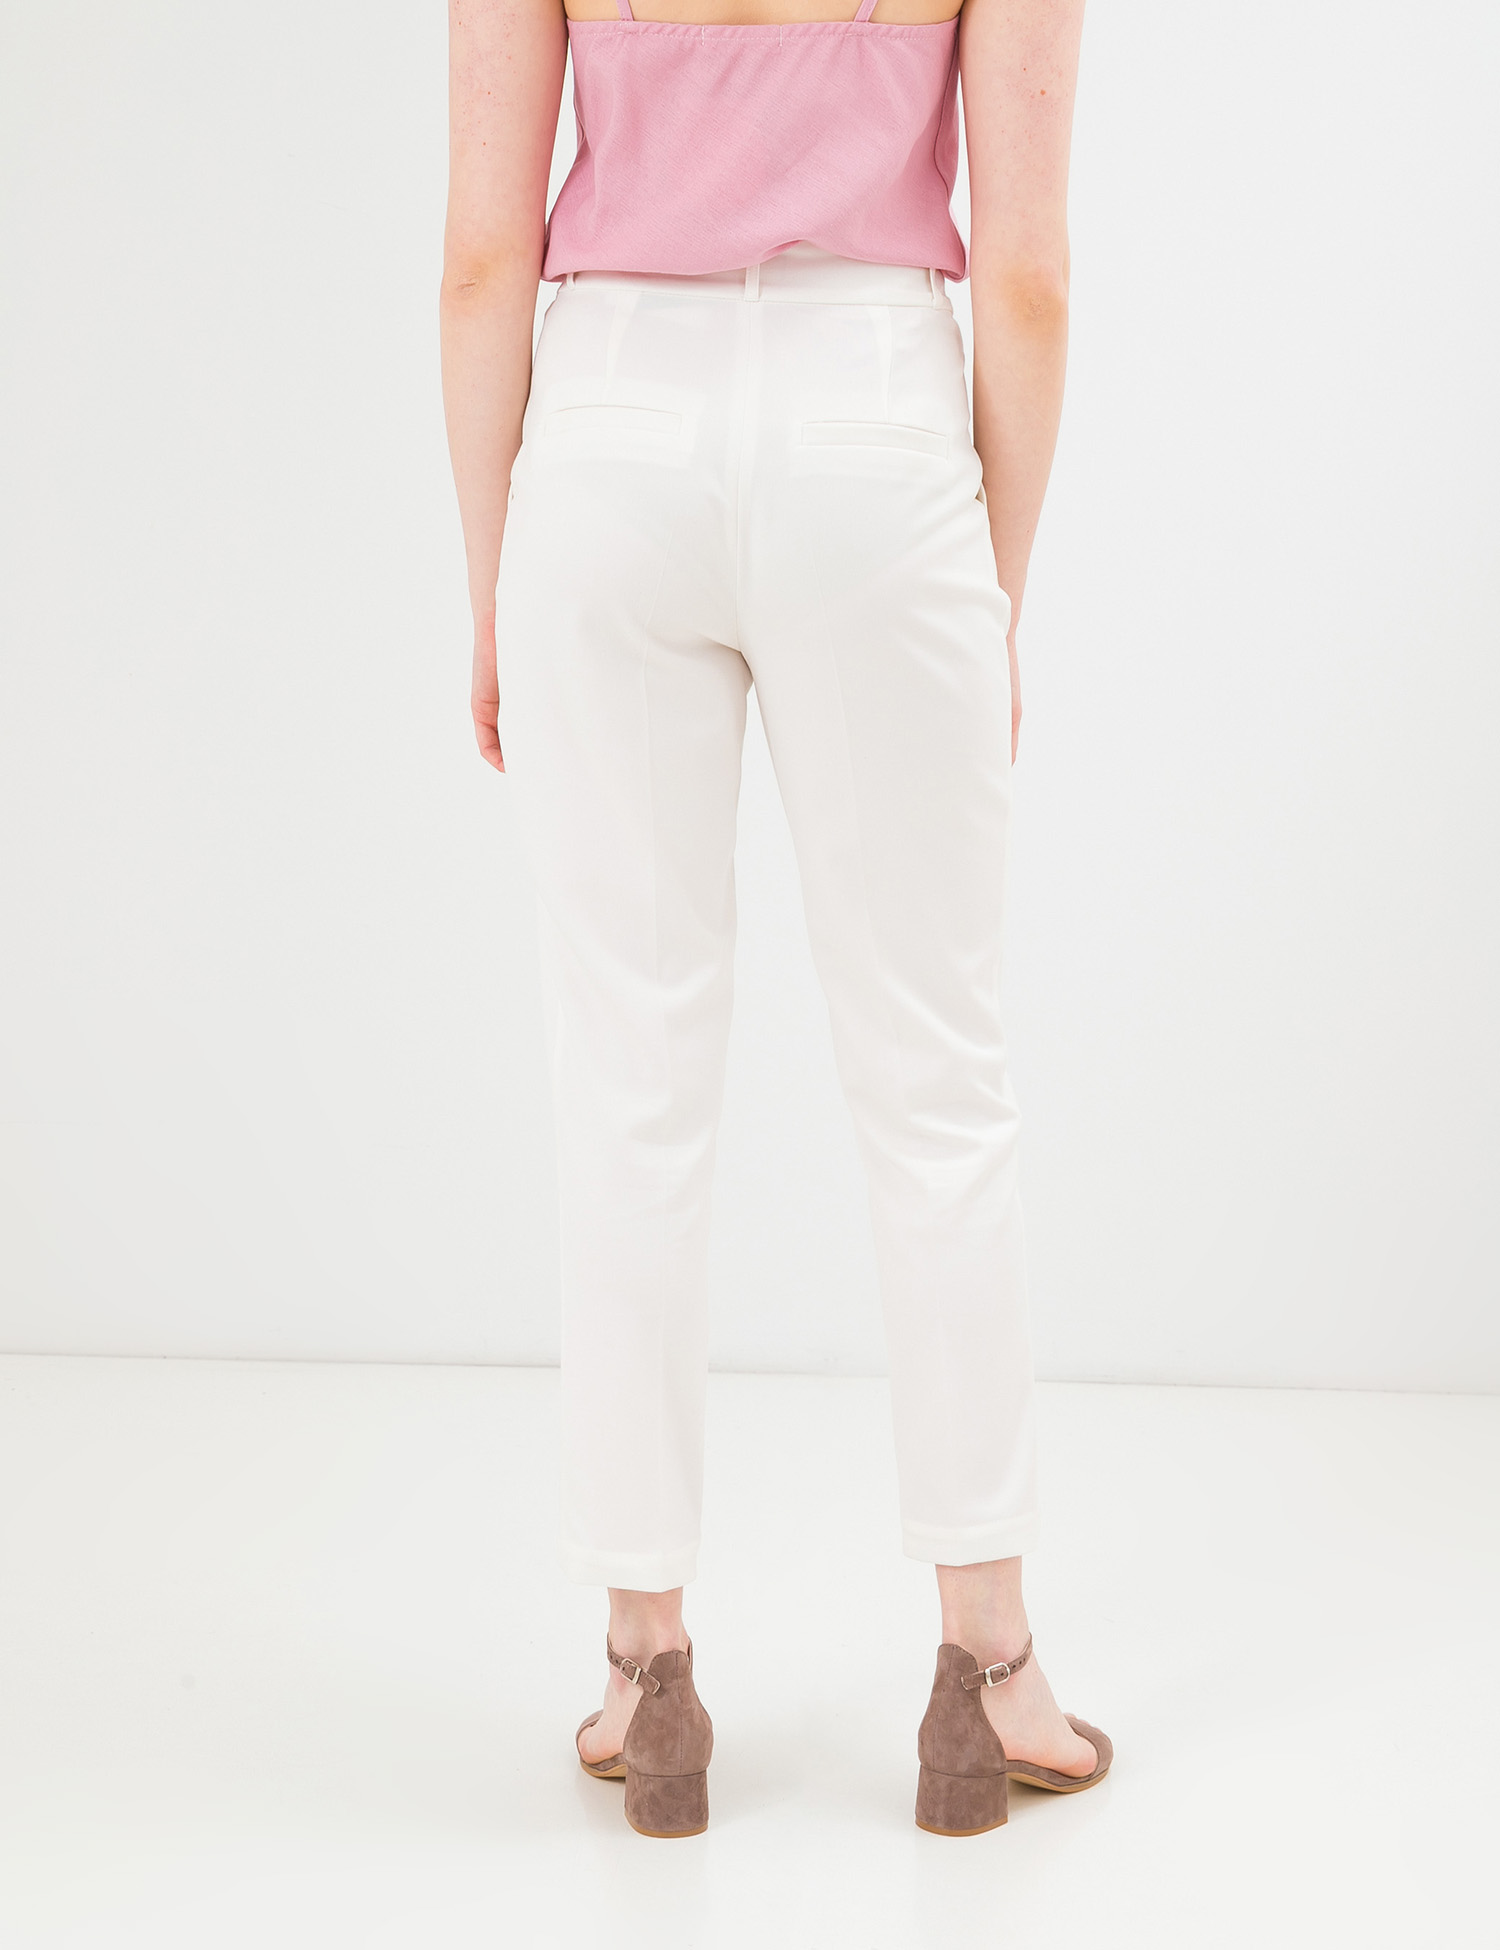 Картинка Жіночі білі брюки